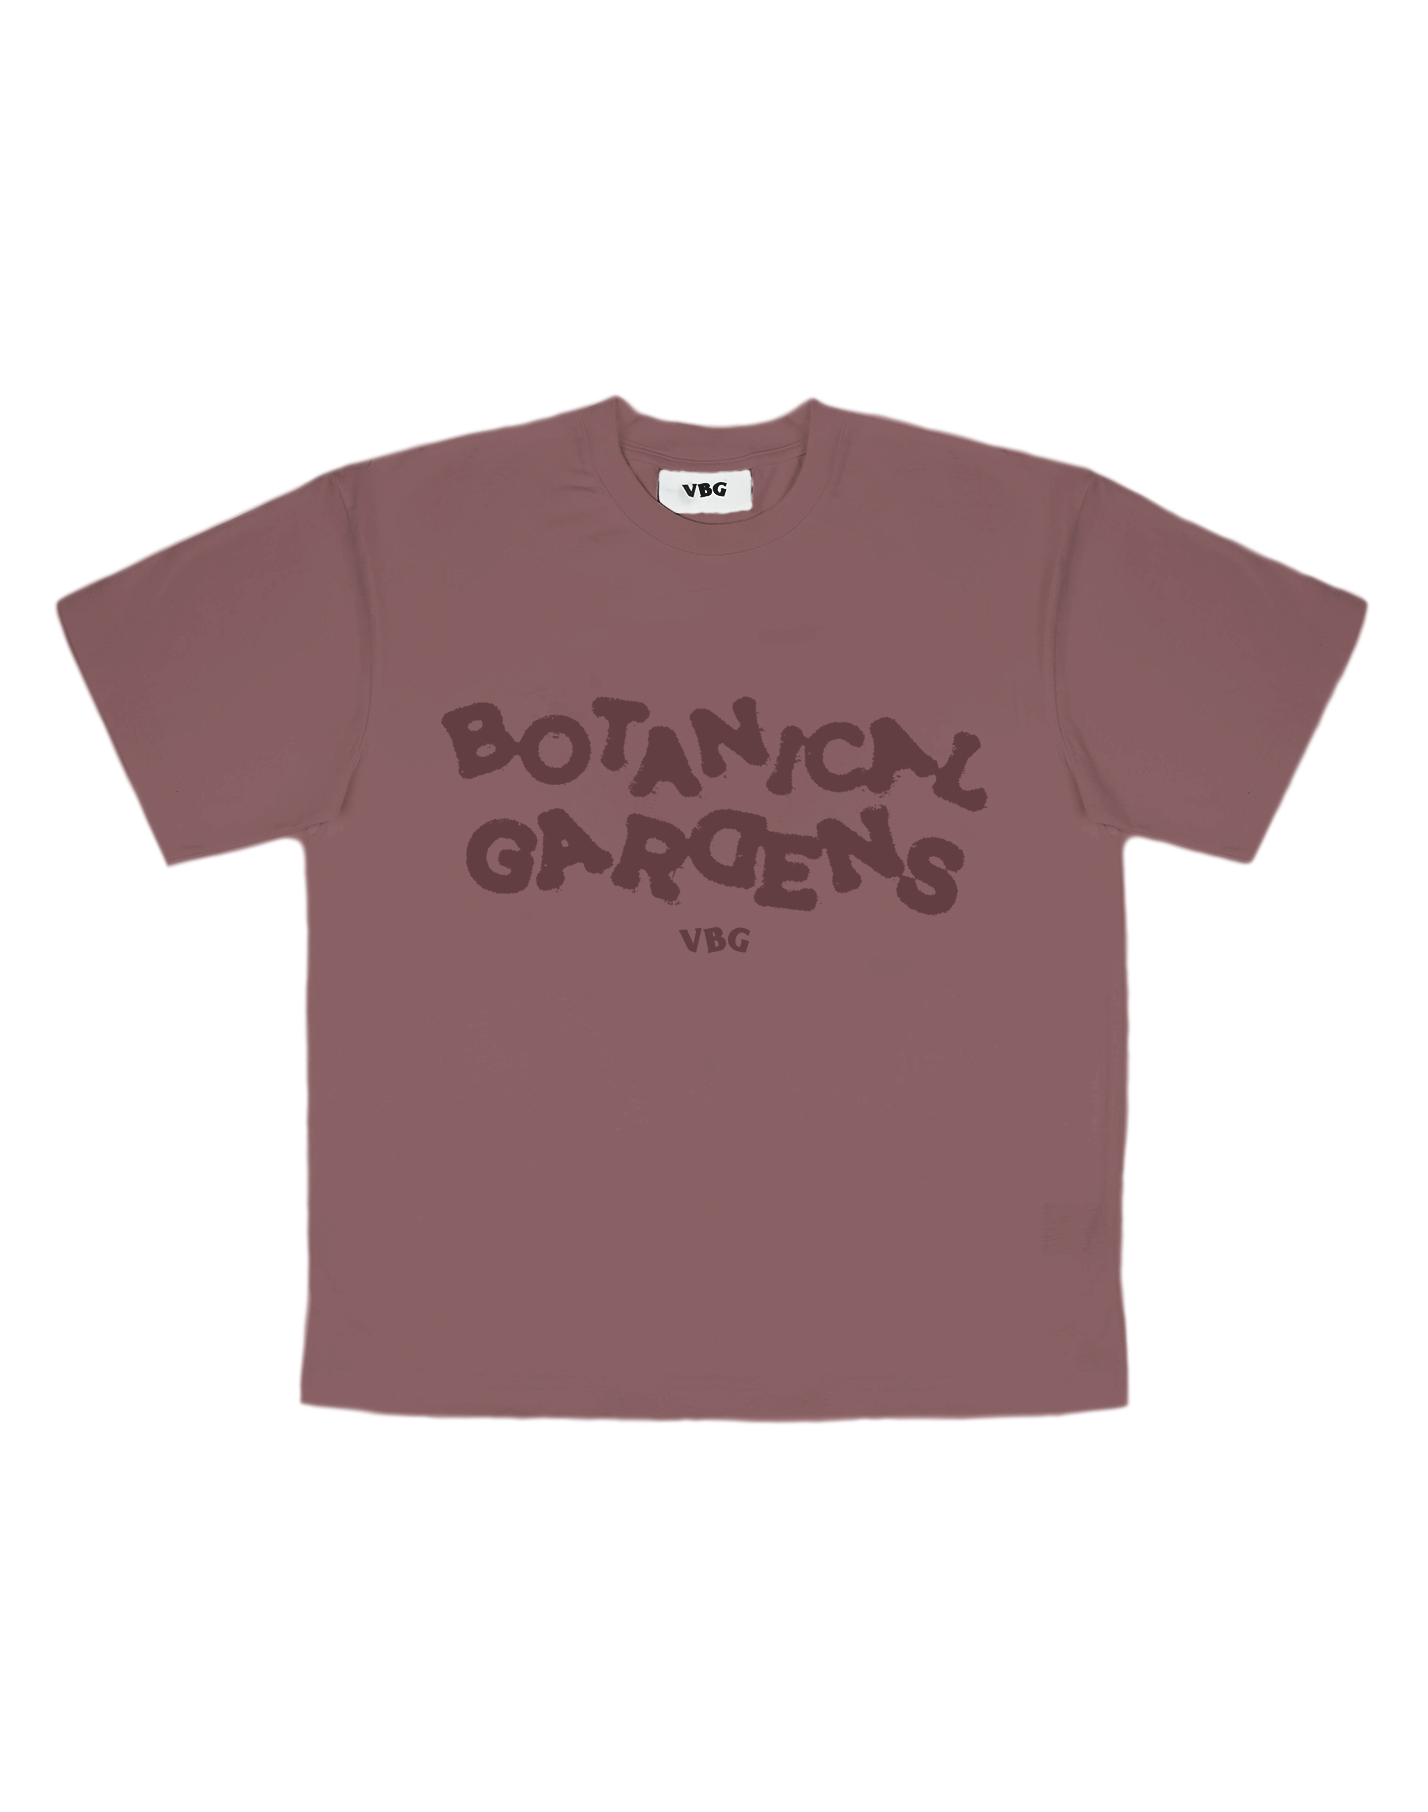 Botanical Gardens T-Shirt - VBG